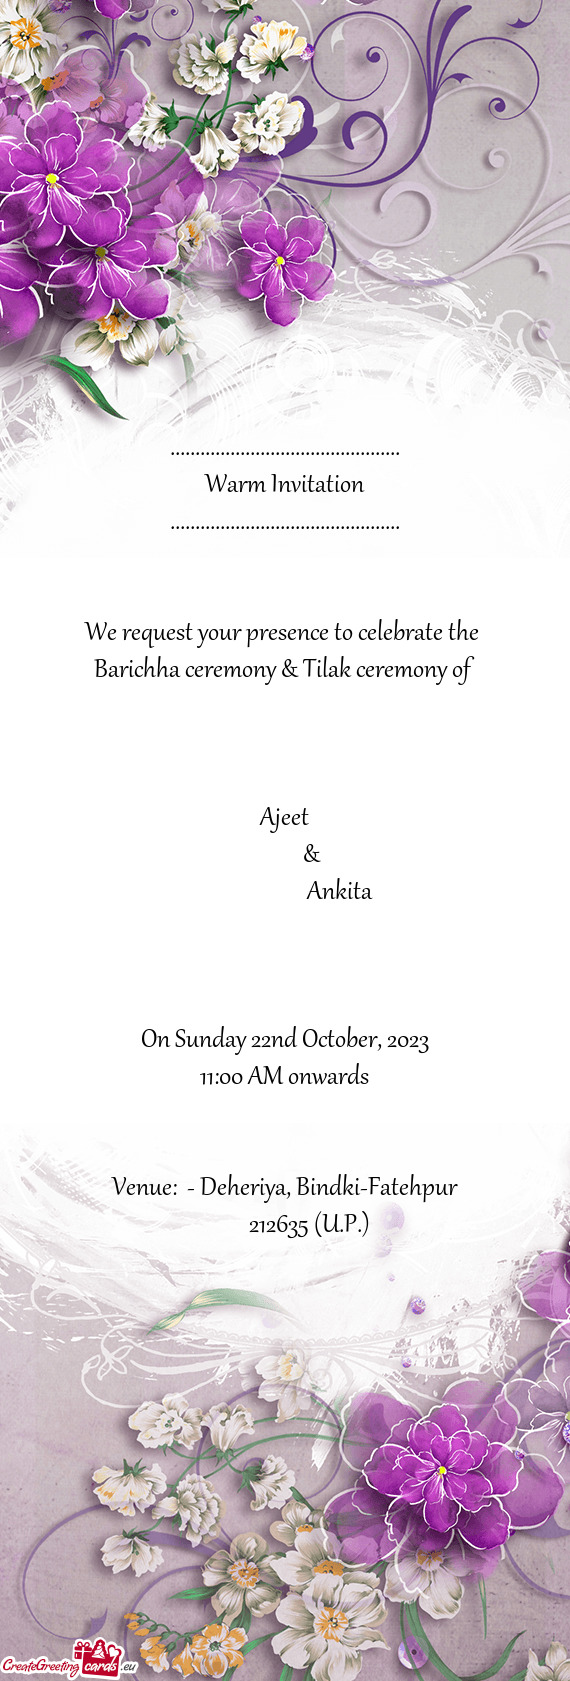 Barichha ceremony & Tilak ceremony of